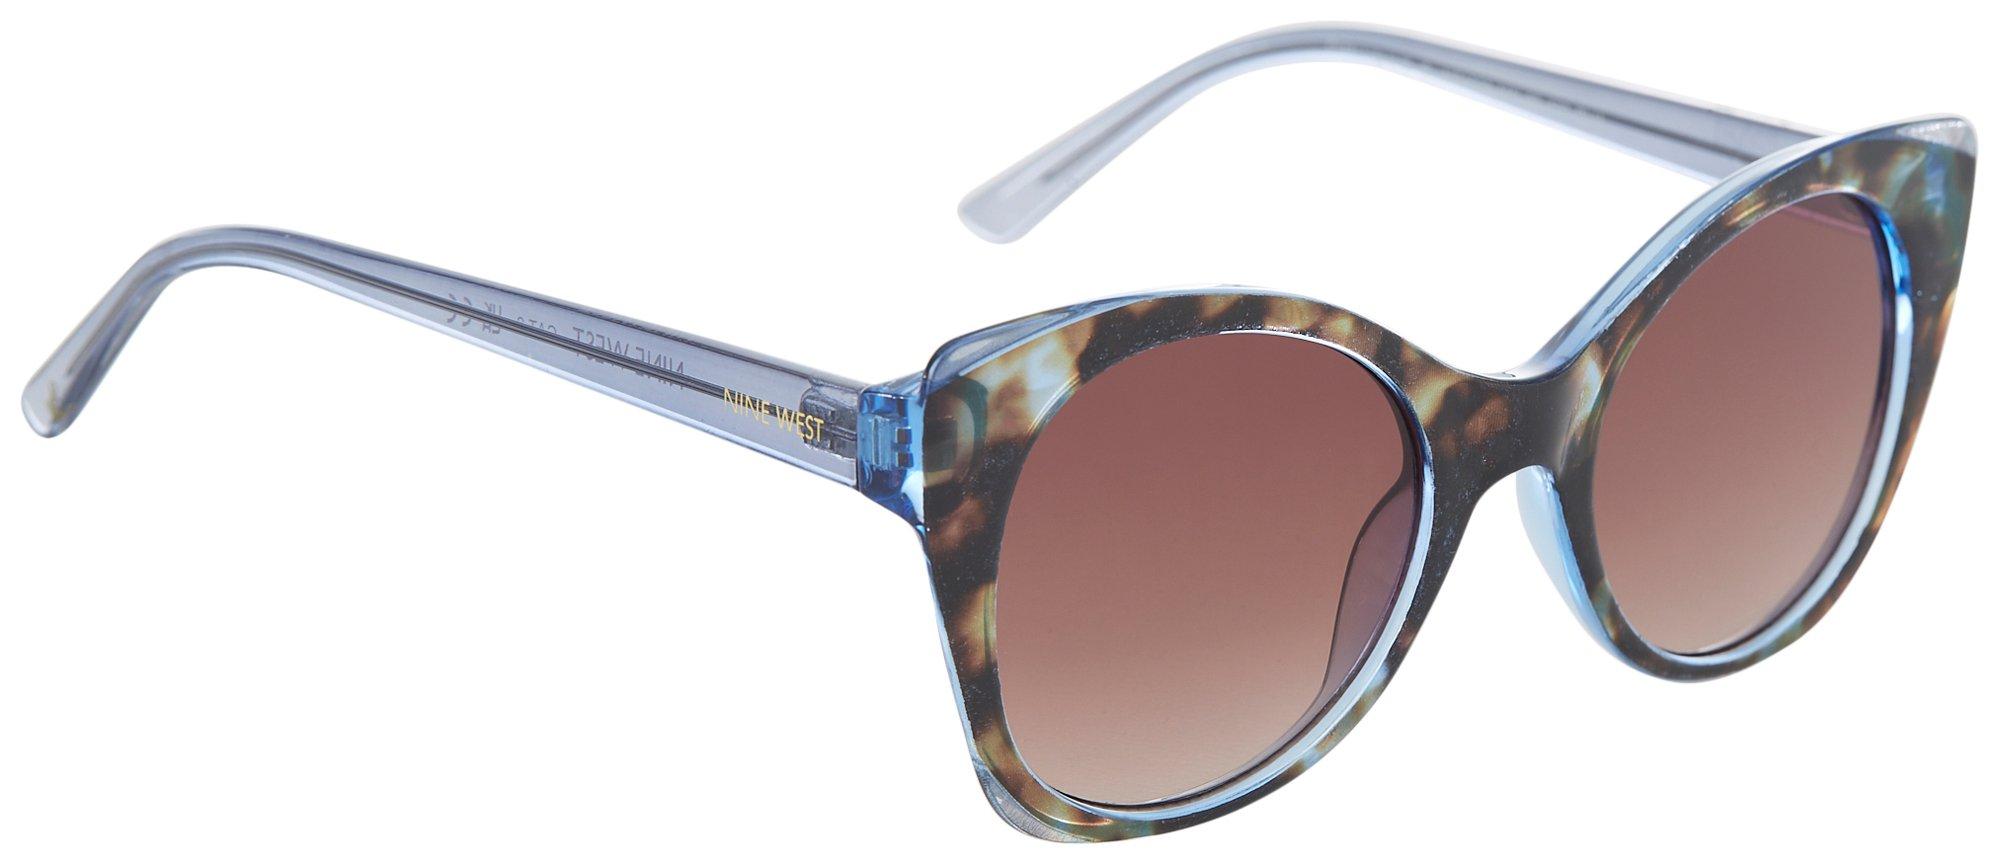 Nine West Womens Cateye Tortoiseshell Plastic Sunglasses